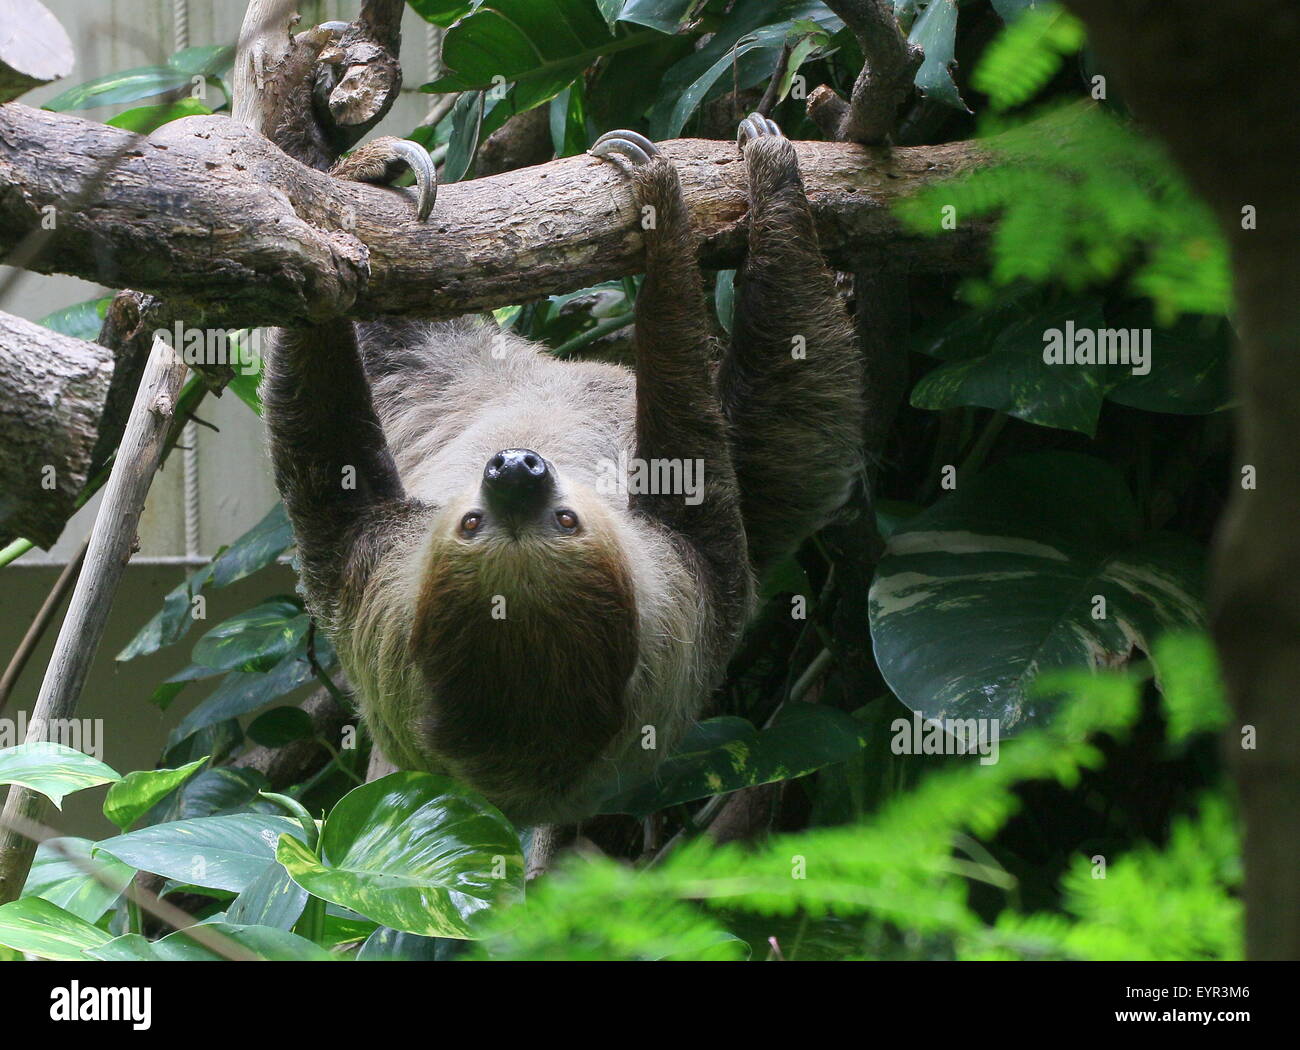 South American Linnaeus zwei toed Sloth oder südlichen zwei – Finger Faultier (Choloepus Didactylus) im Dierenpark Emmen Zoo, Niederlande Stockfoto